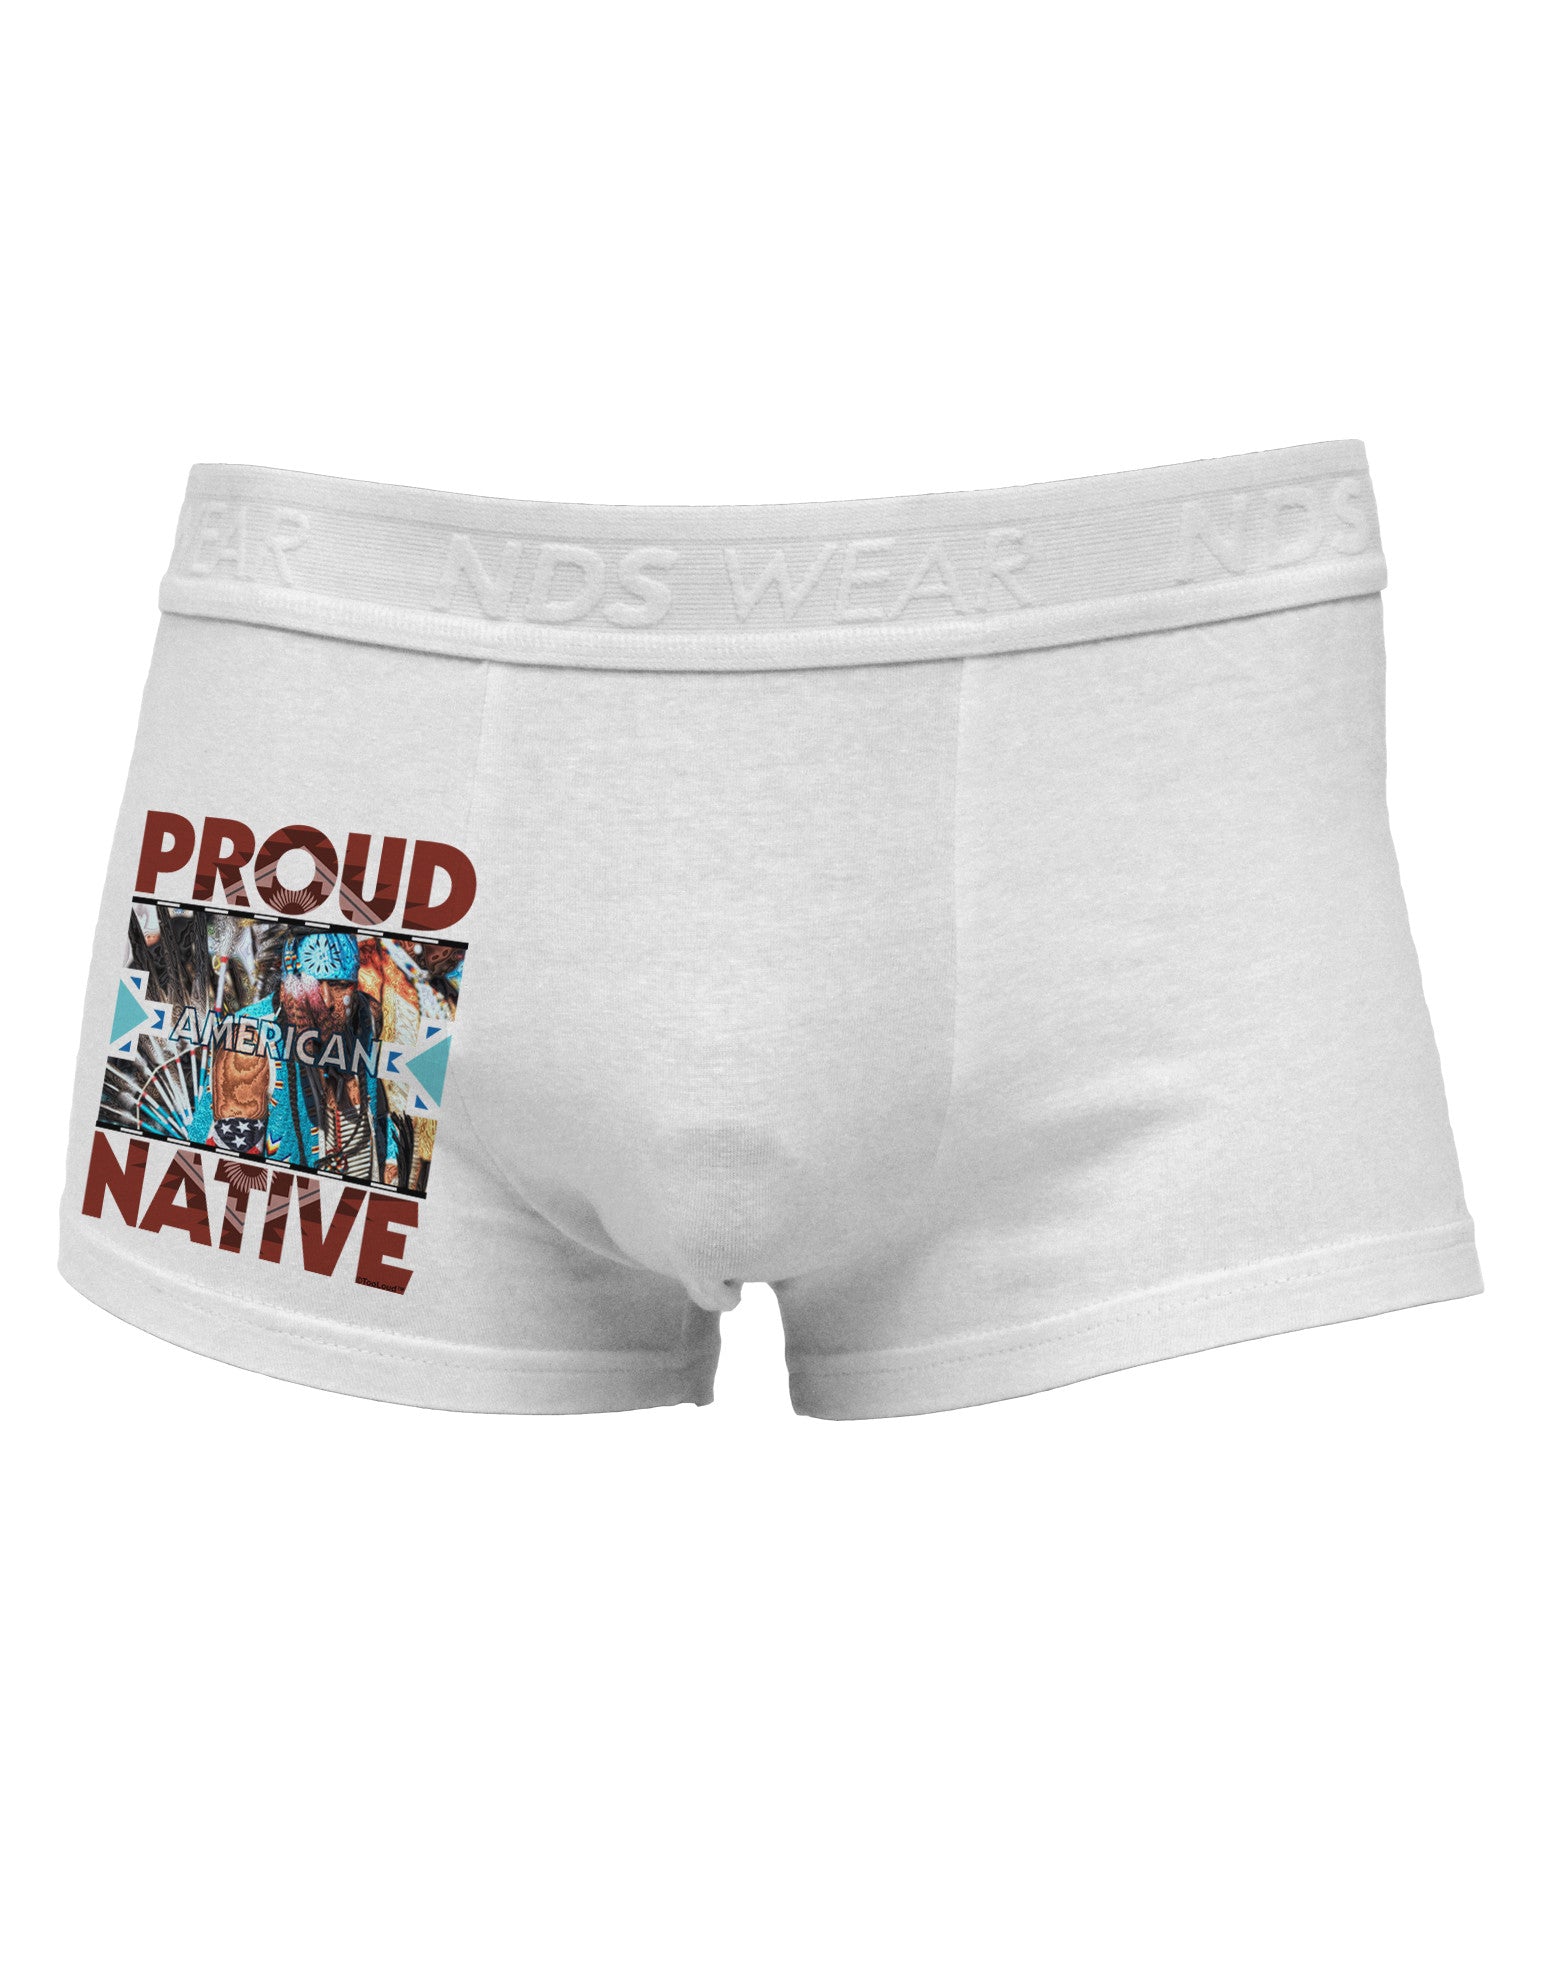 Proud Native American Side Printed Mens Trunk Underwear